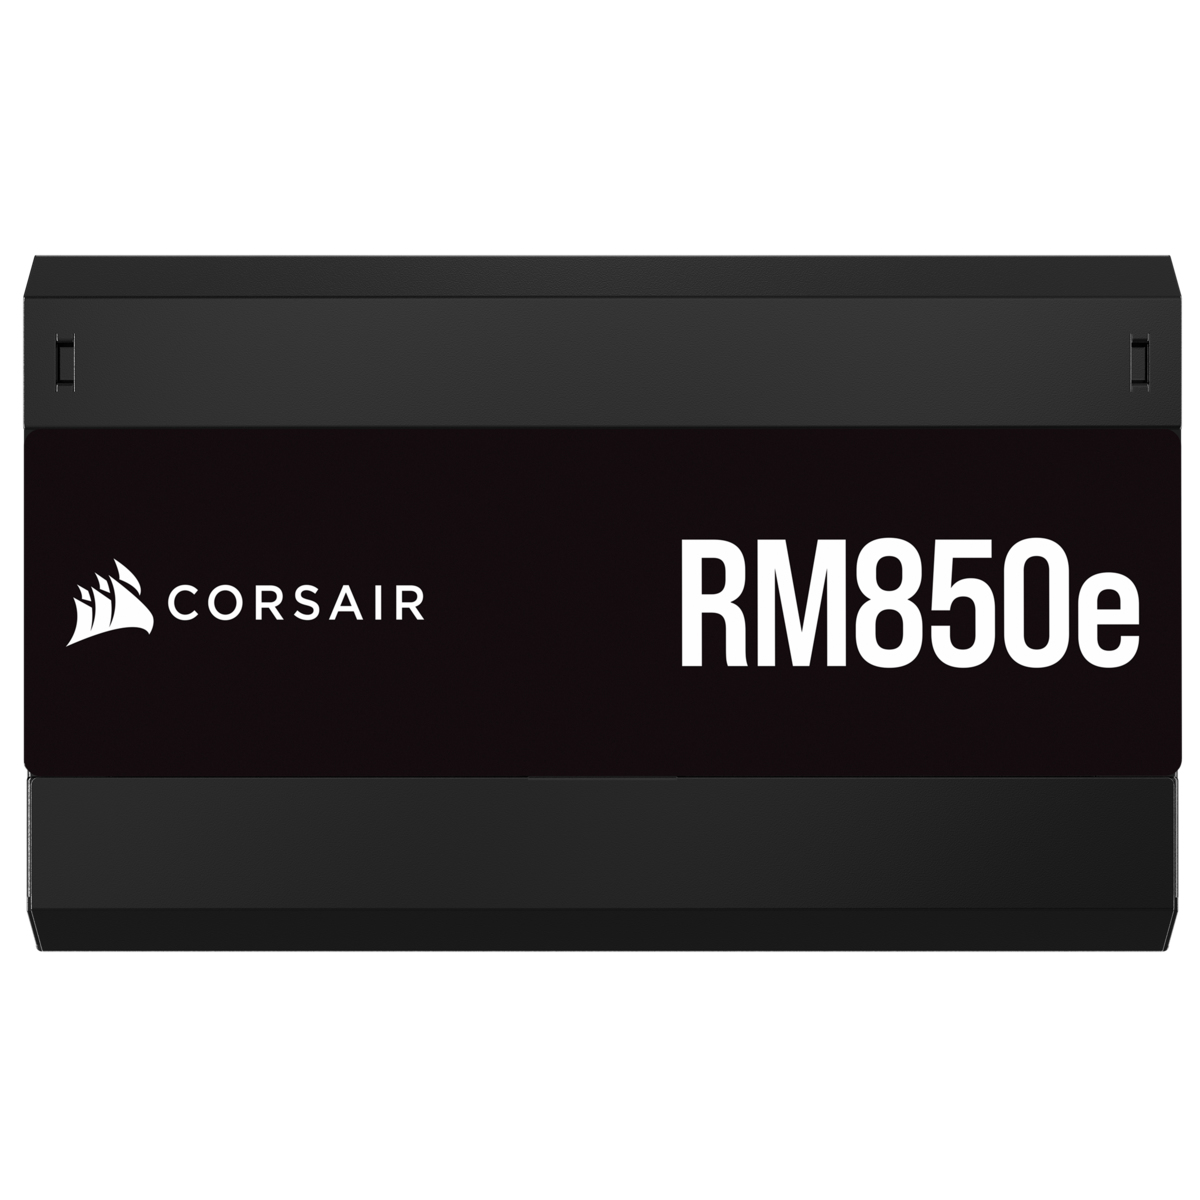 Corsair - Fuente Alimentación Modular Corsair RMe Series RM850e 850W 80 Plus Gold ATX3.0